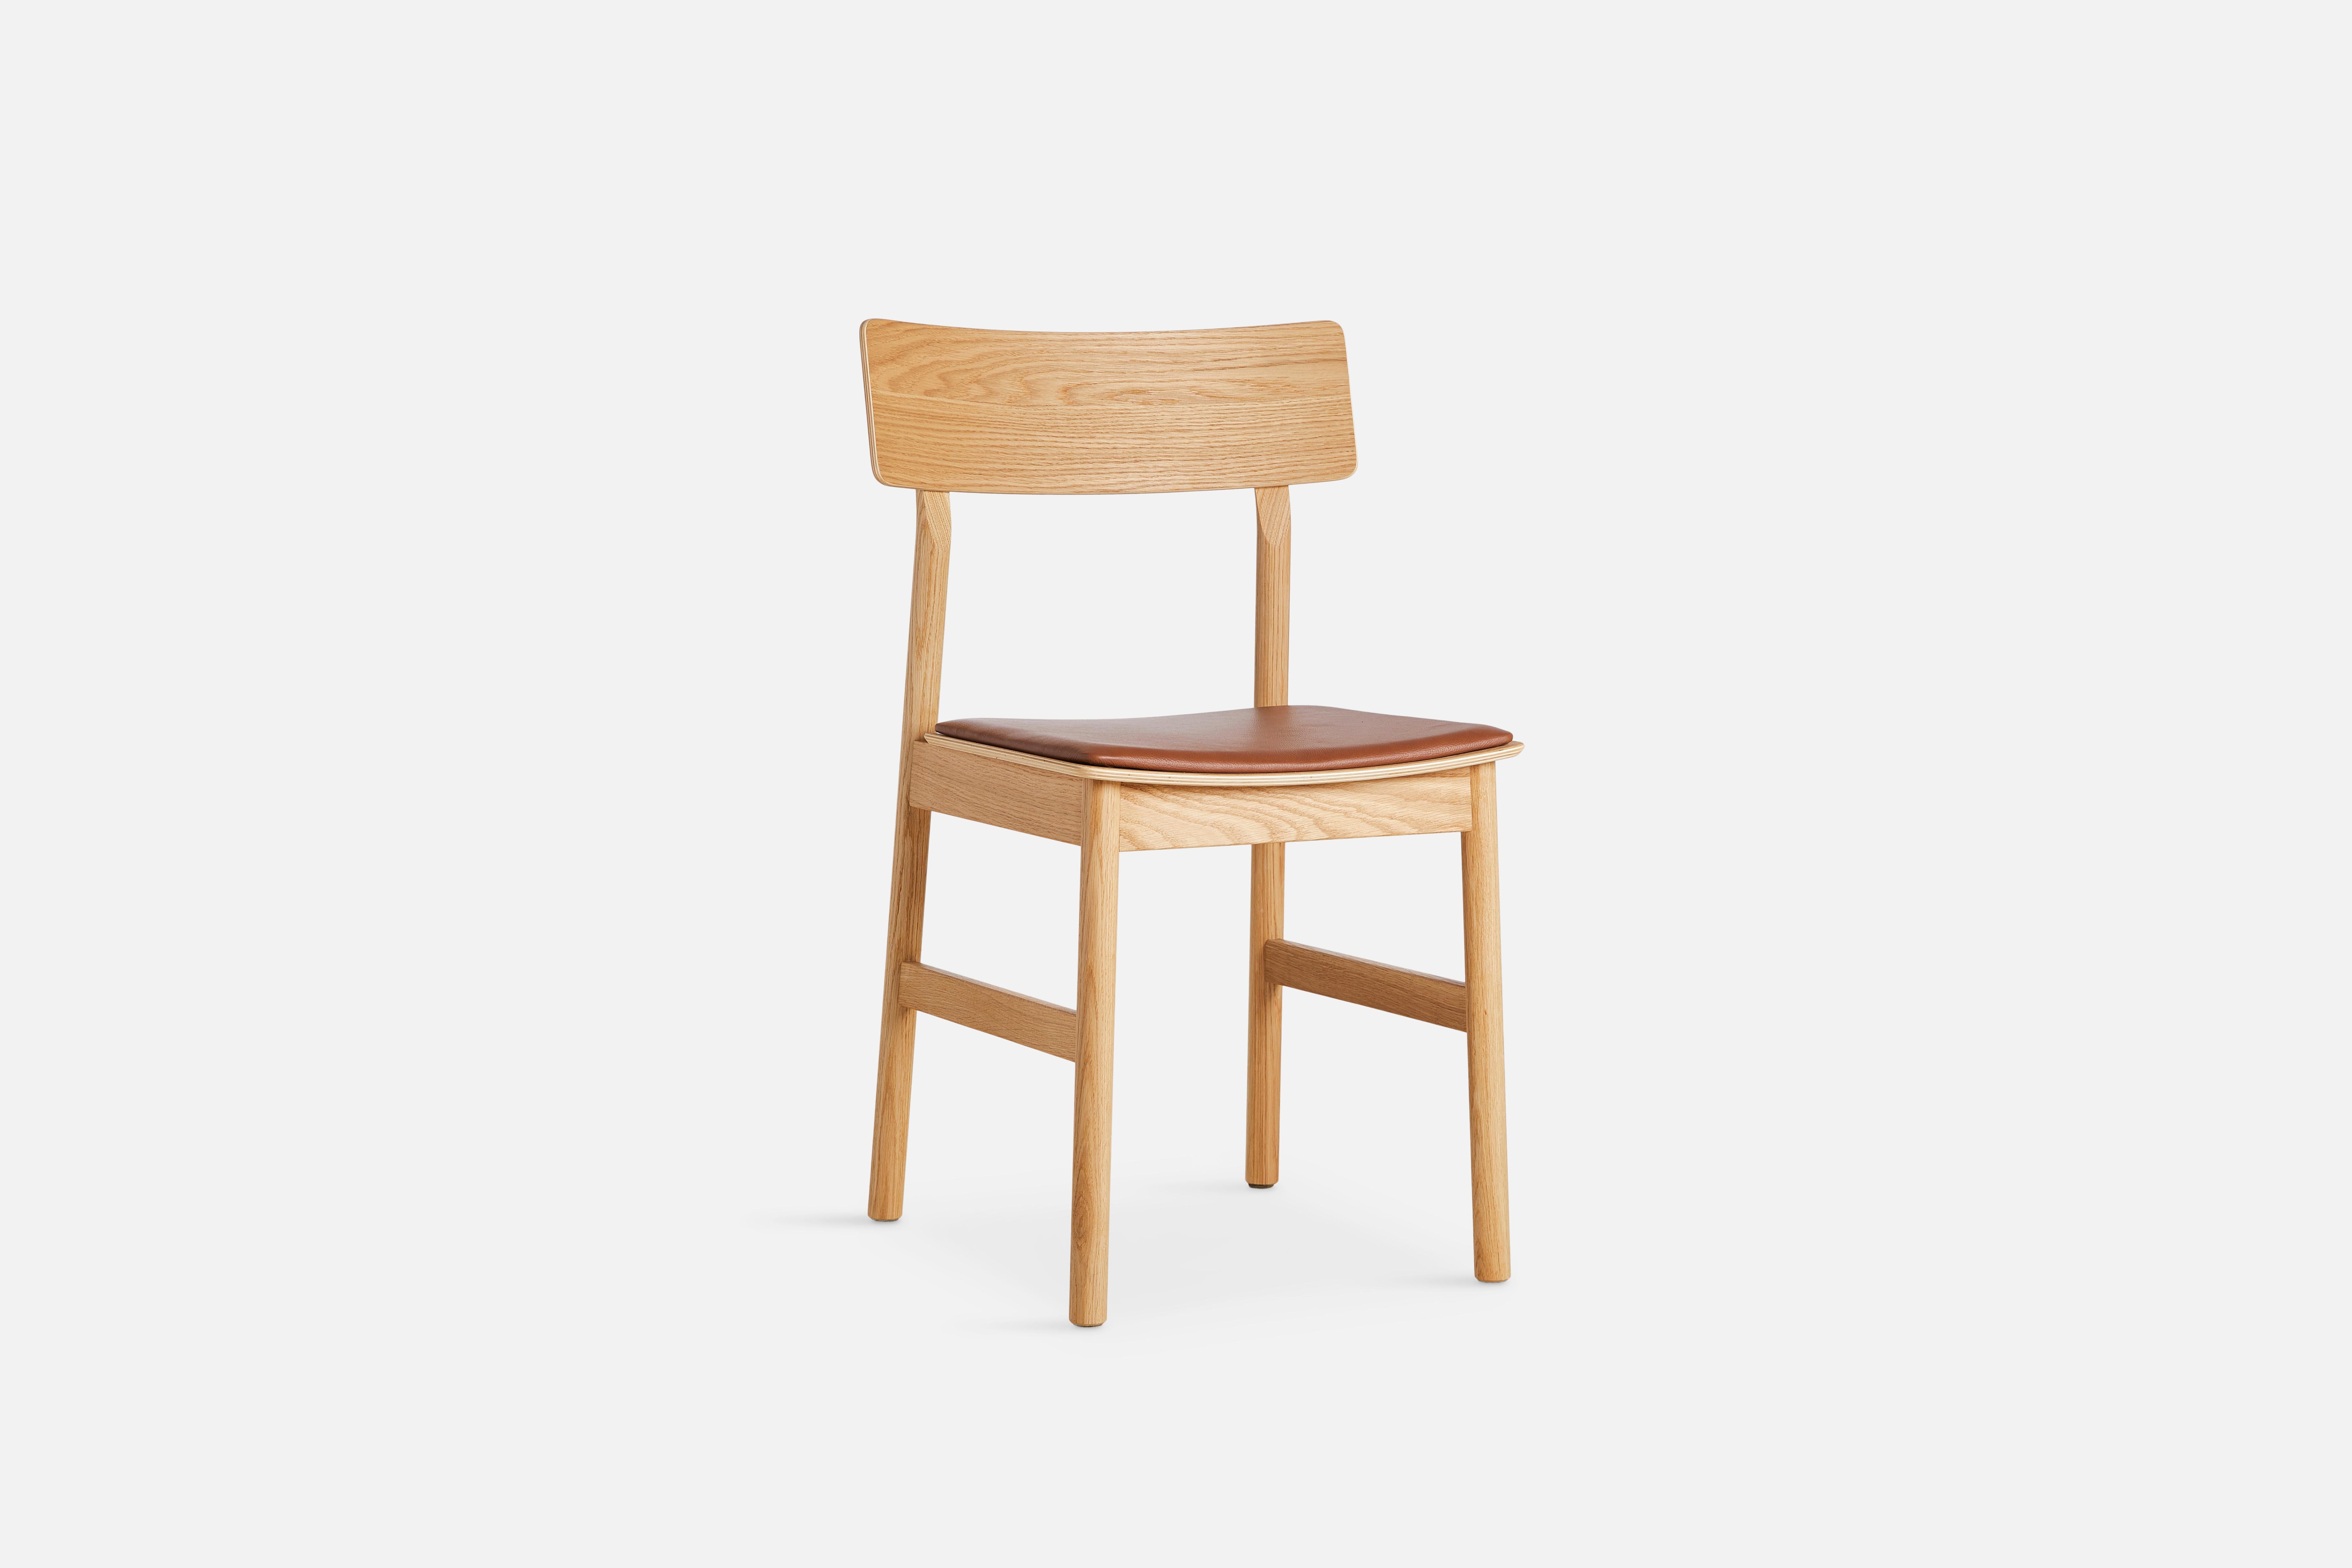 Chaise de salle à manger Pause 2.0 en chêne huilé avec assise en cuir par Kasper Nyman.
Matériaux : frêne, contreplaqué, cuir, rembourrage.
Dimensions : D 47 x L 48 x H 80 cm.
Également disponible en différentes couleurs et finitions.

Les